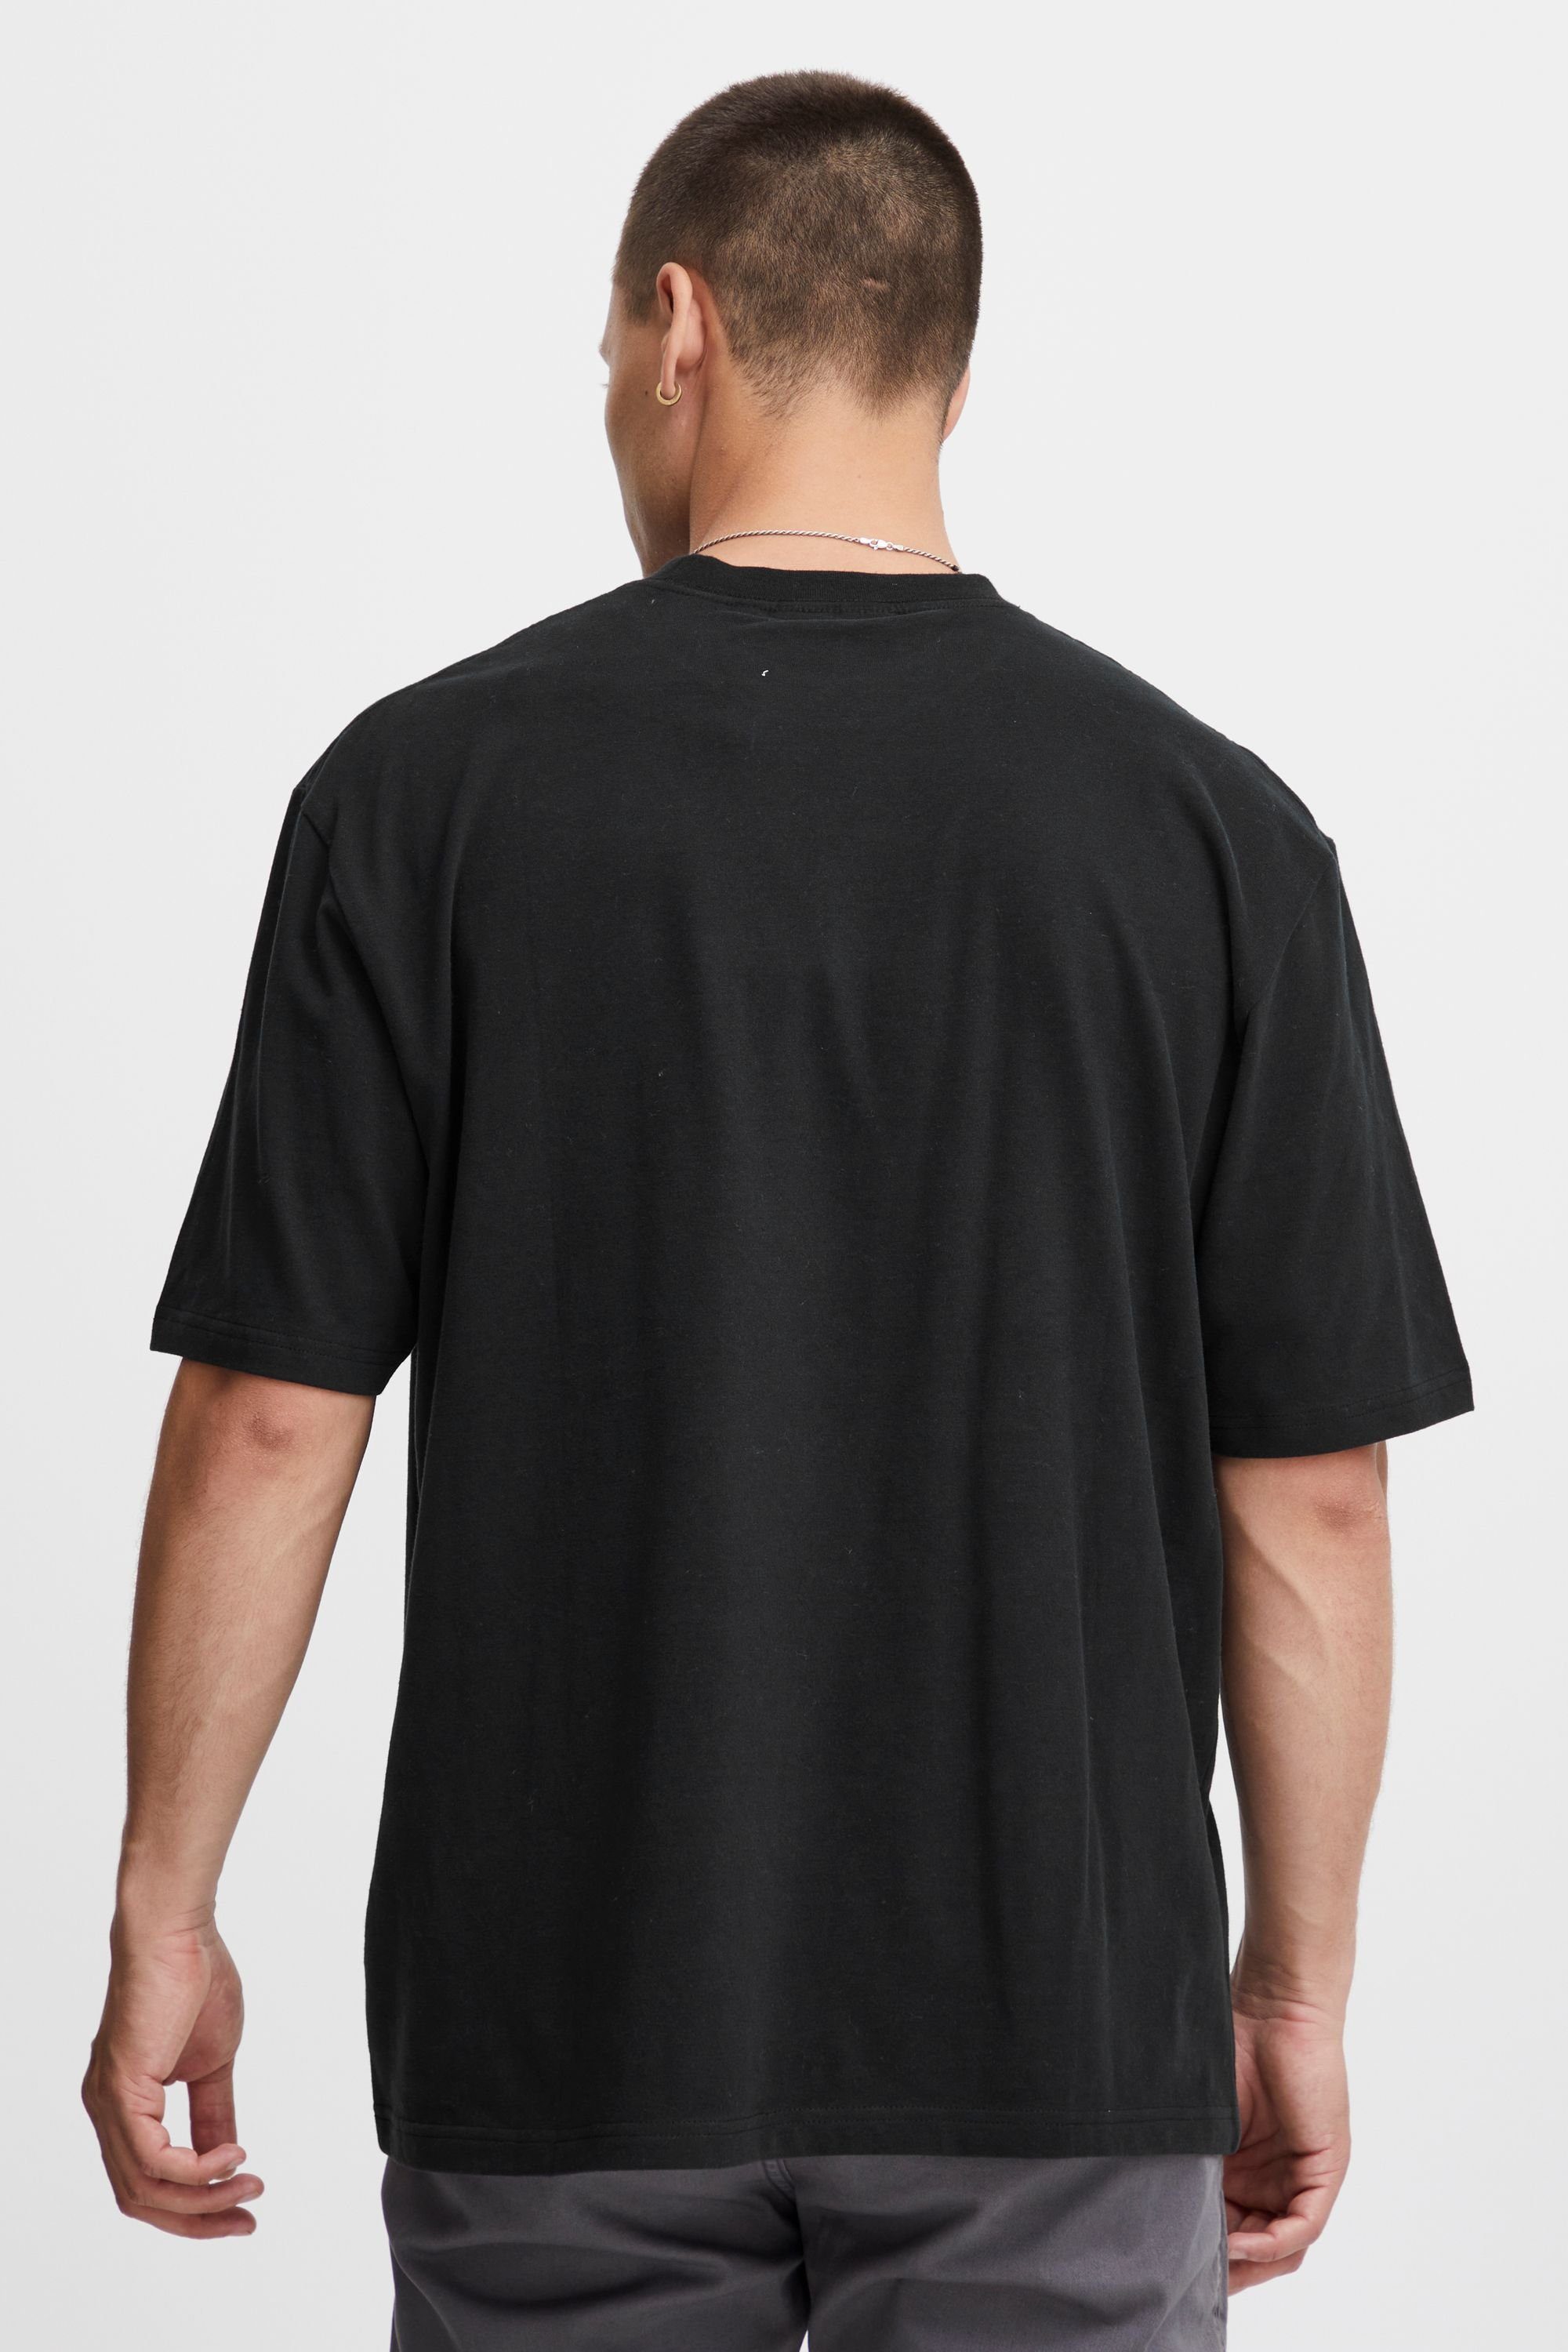 T-Shirt Indicode Black (999)